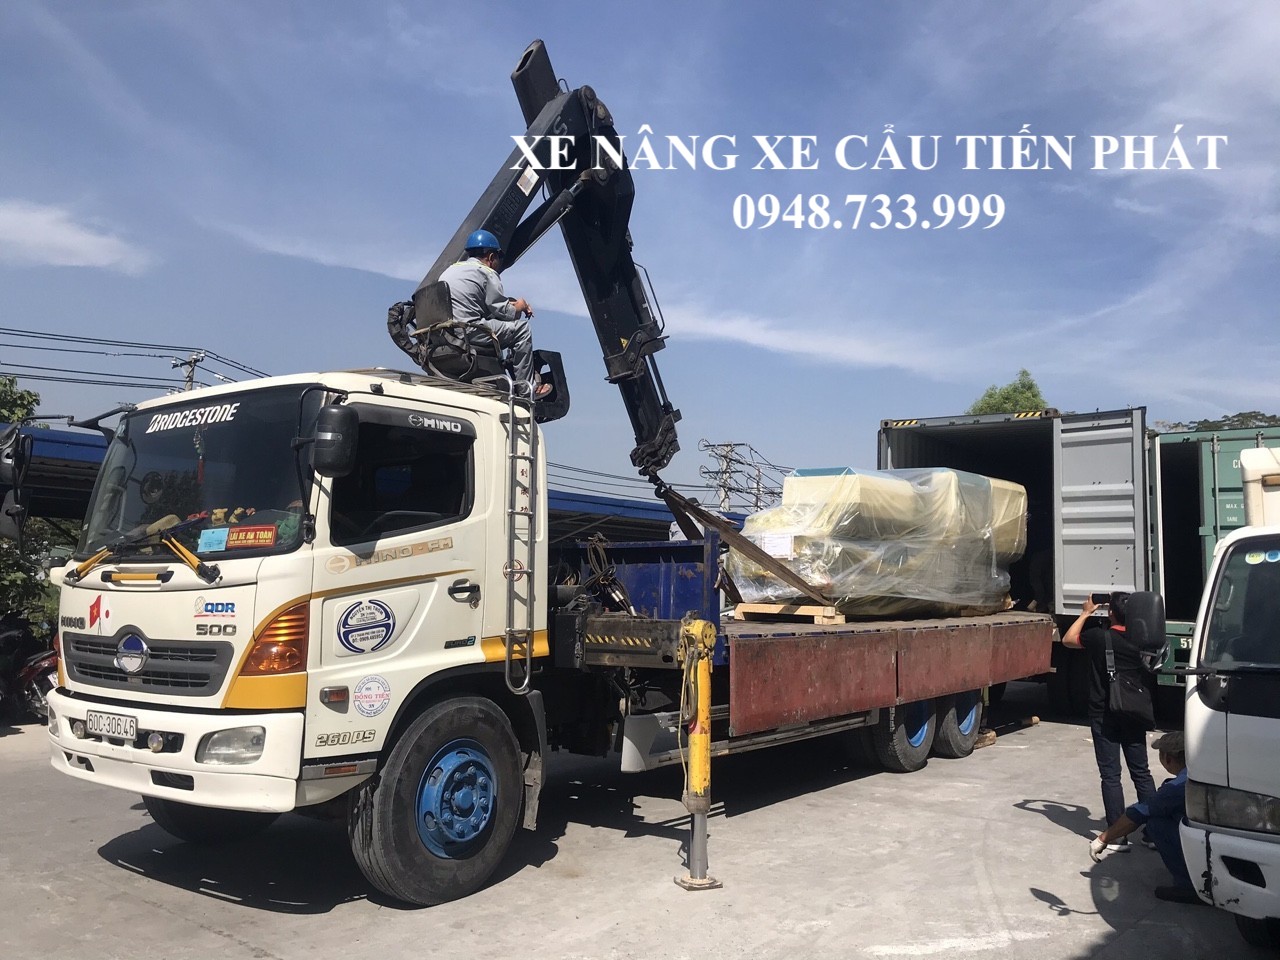 Cho thuê xe cẩu thùng rút container tại Đồng Nai